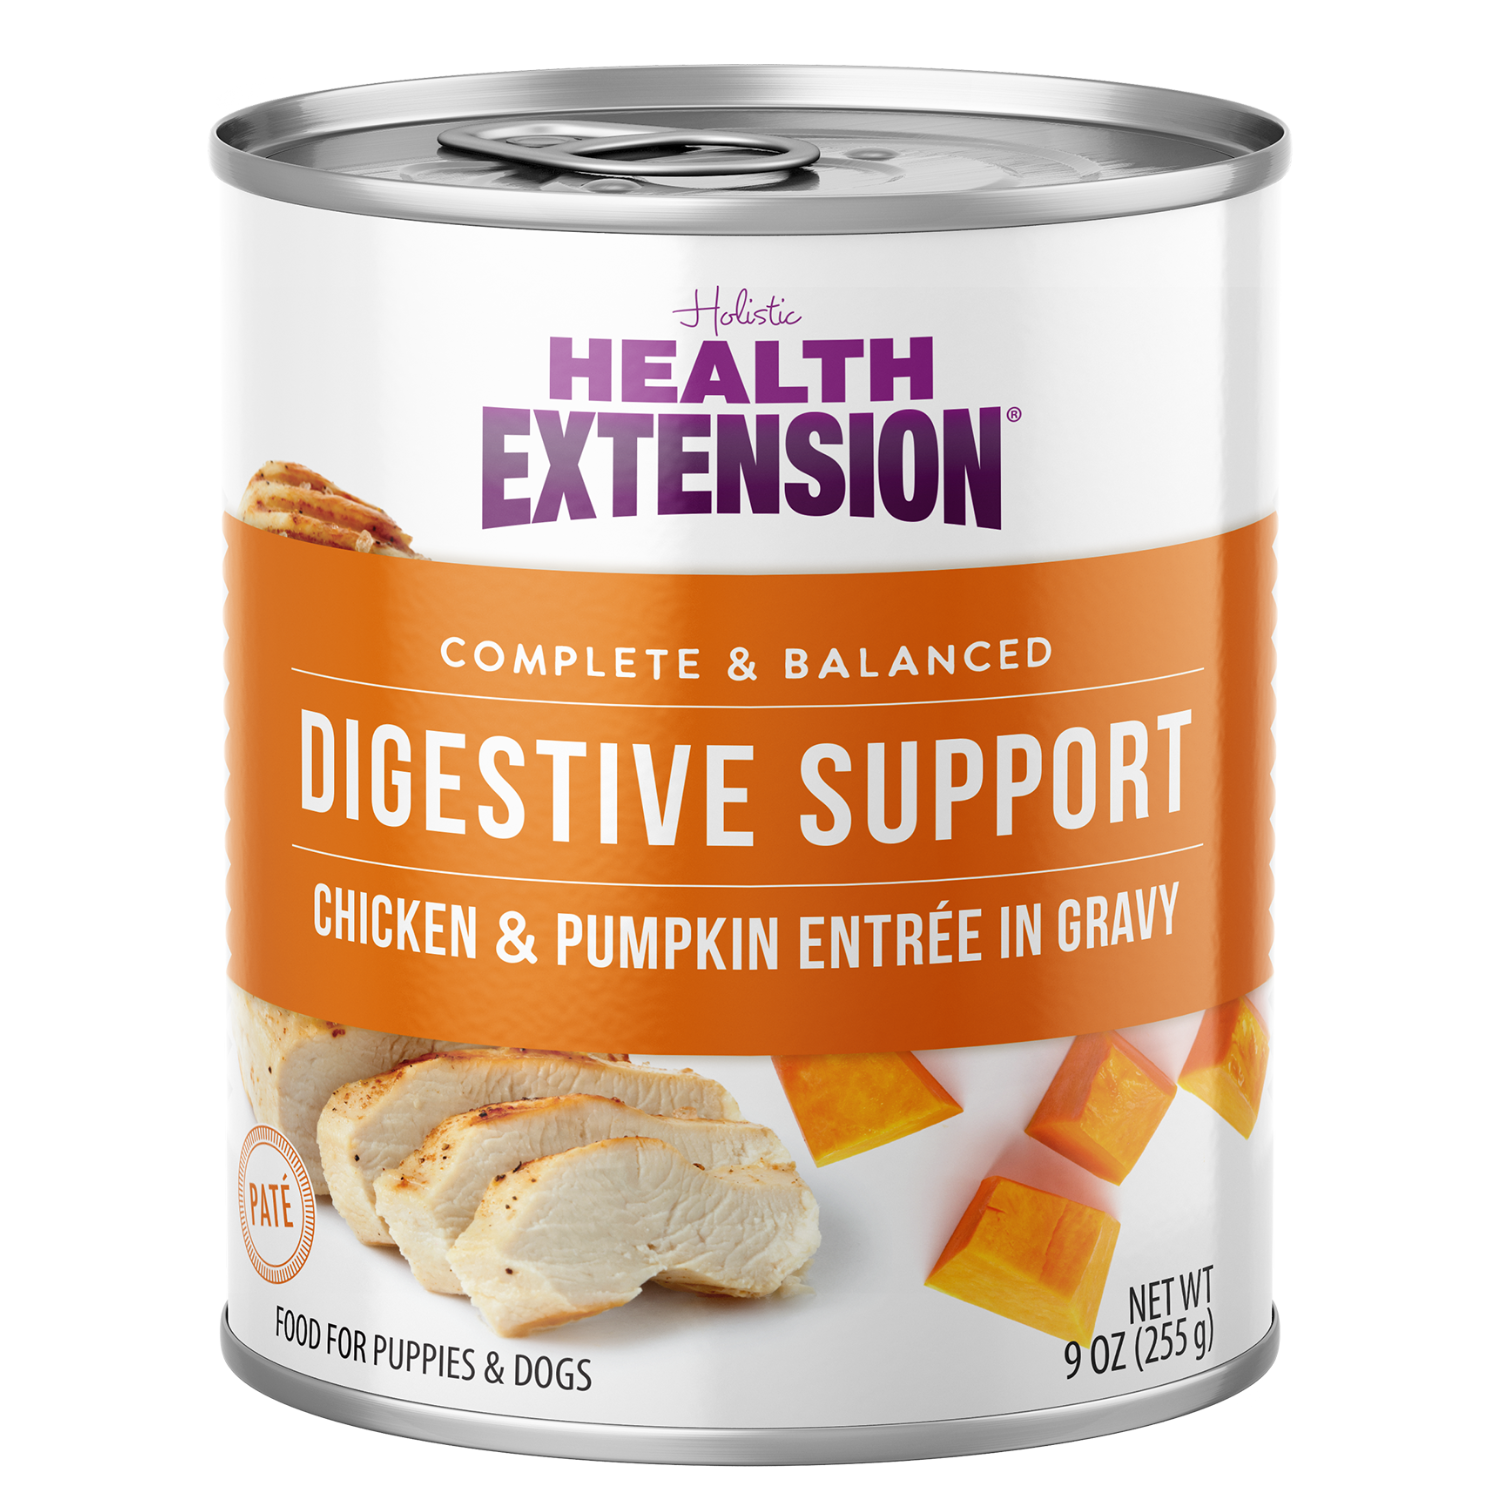 Digestive Support, Chicken & Pumpkin Entrée in Gravy 9oz